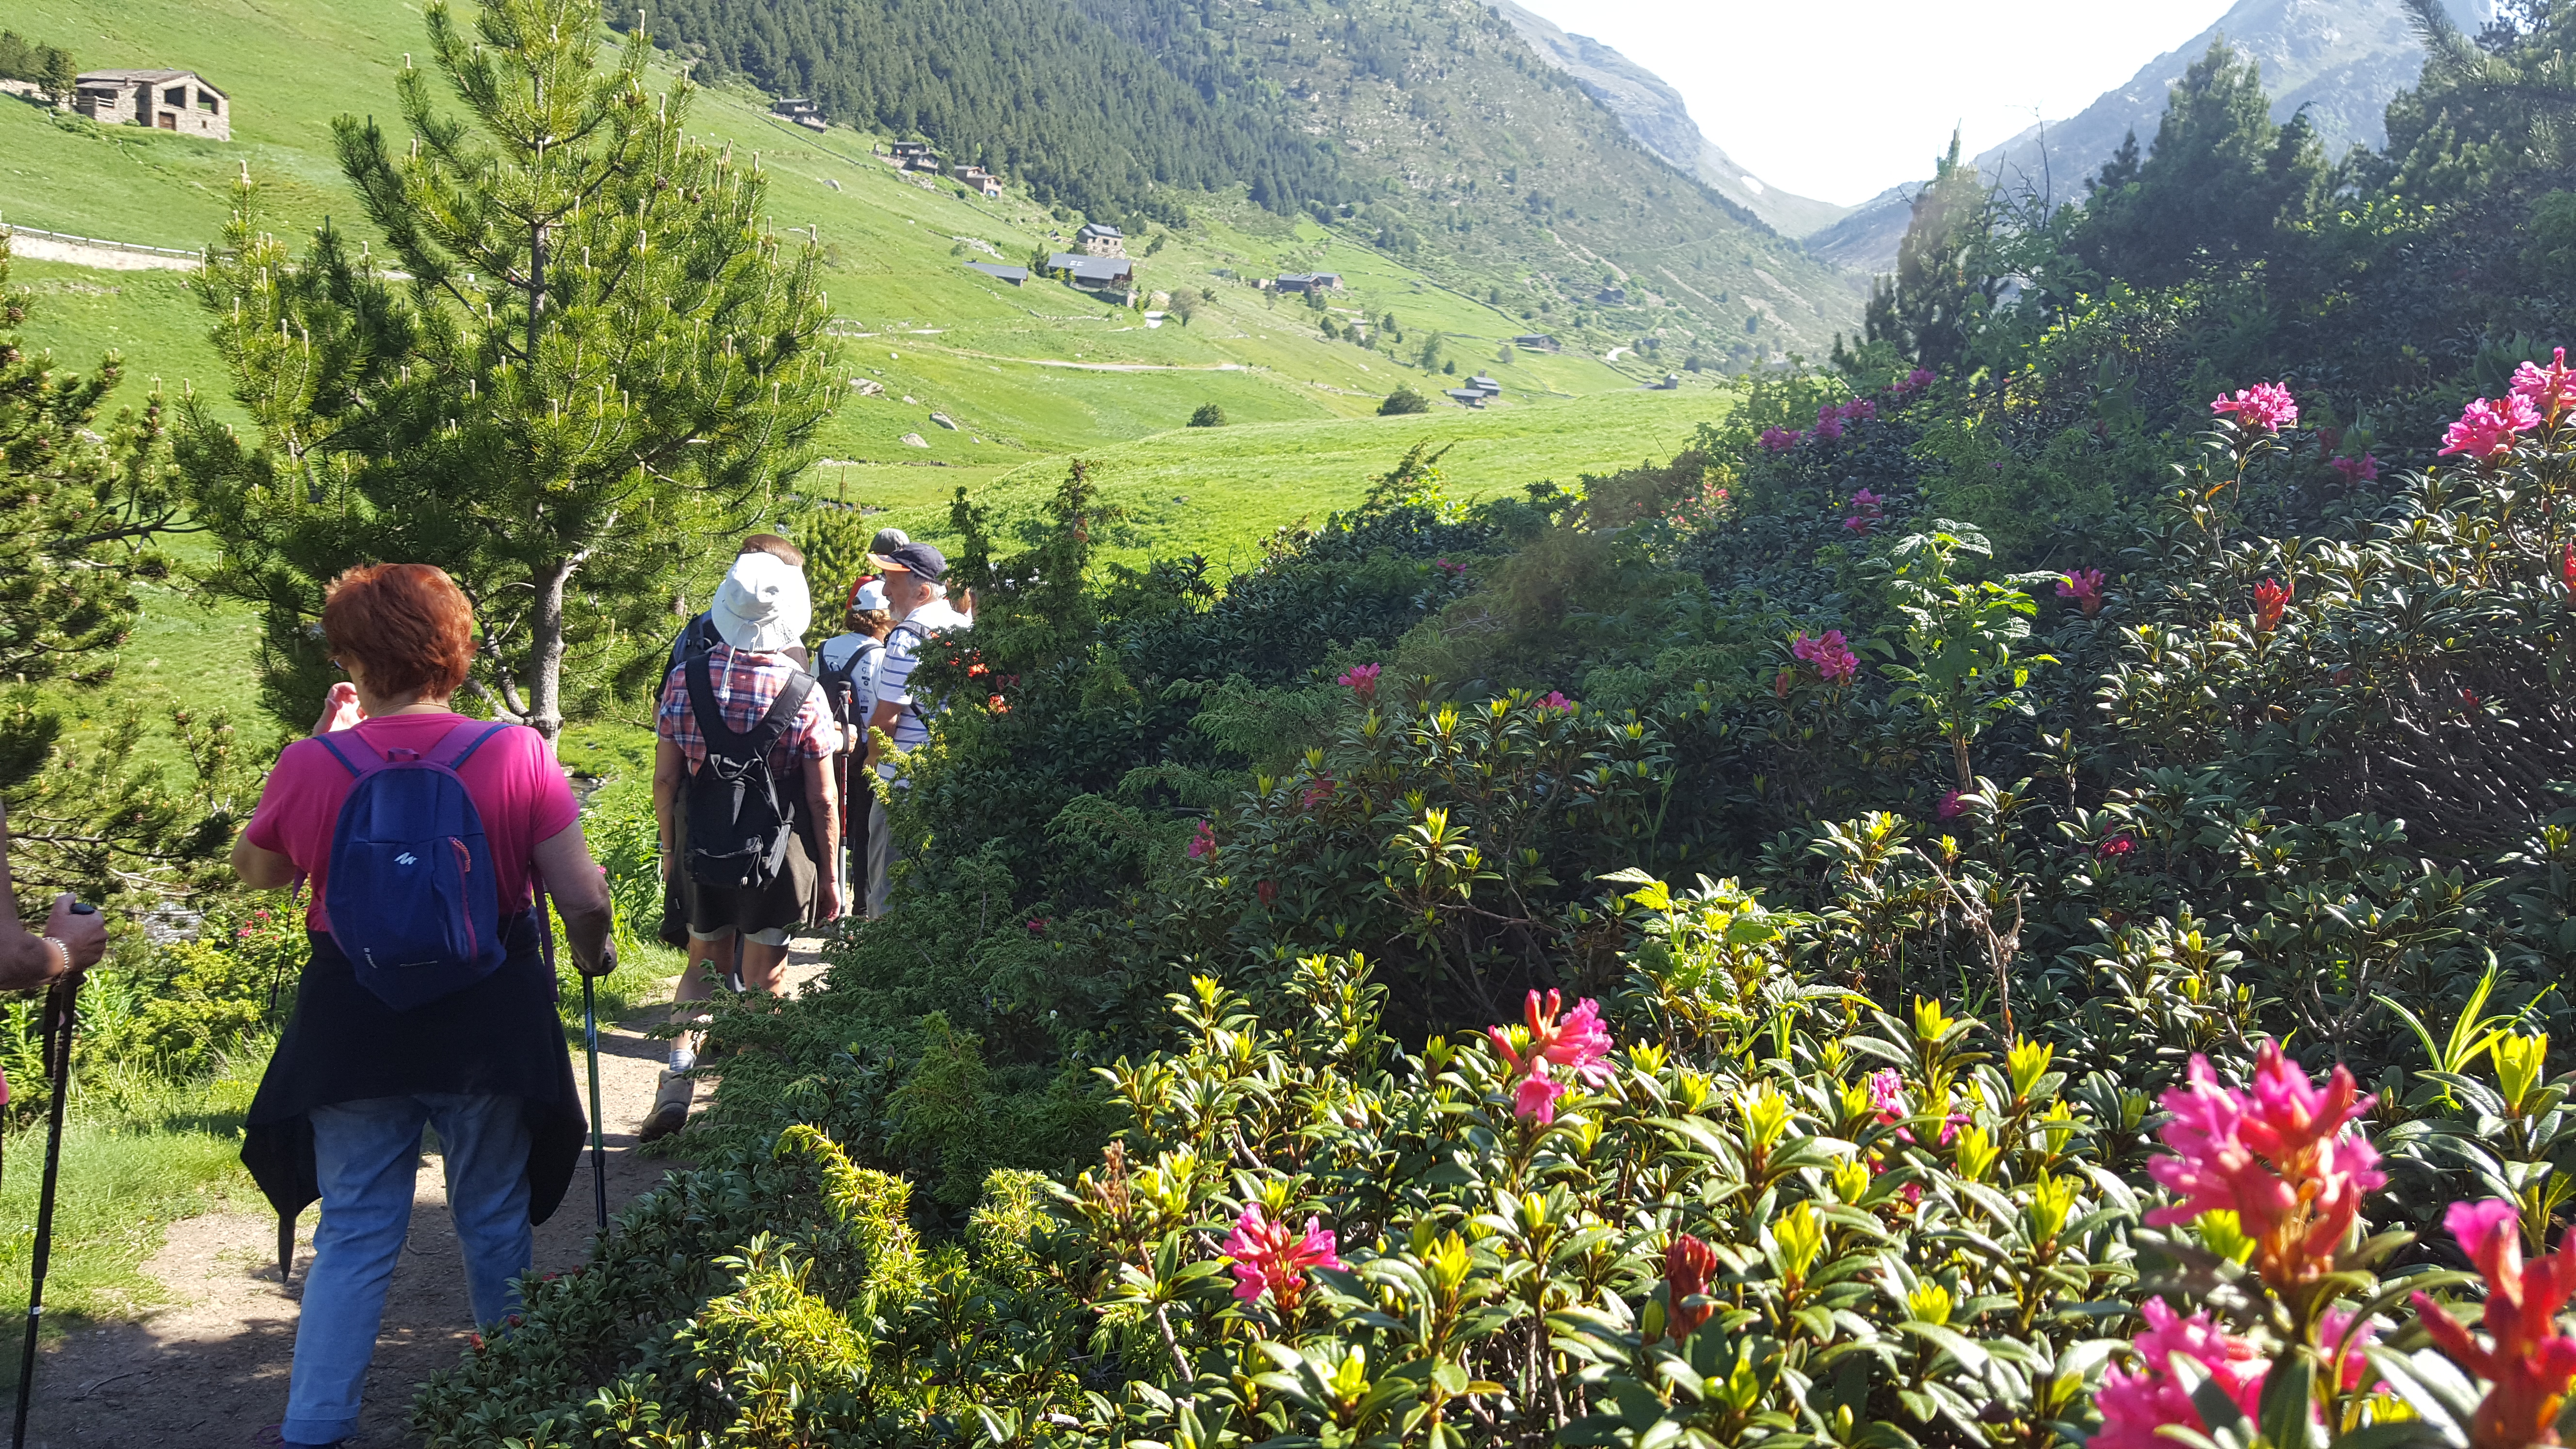 La Fundació Crèdit Andorrà organitza una ruta de senderisme guiada